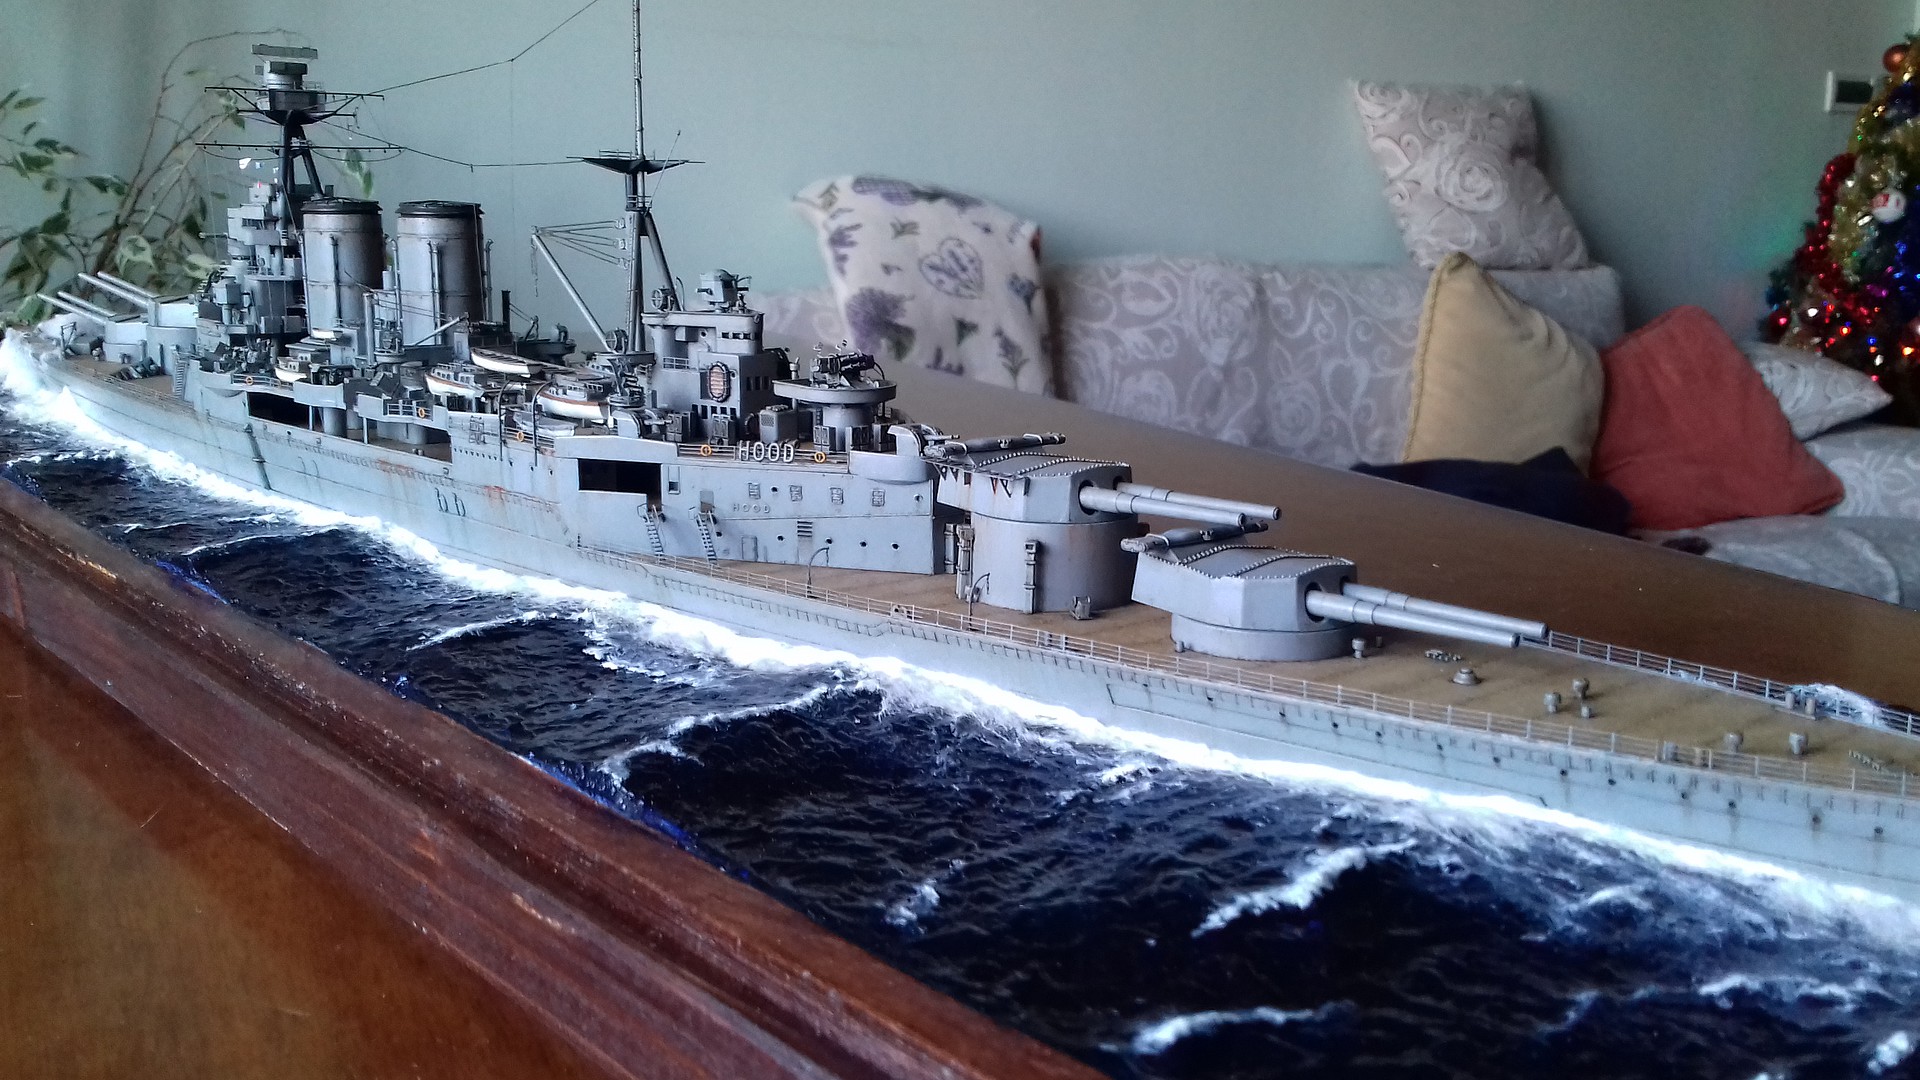 Scale Model Ships